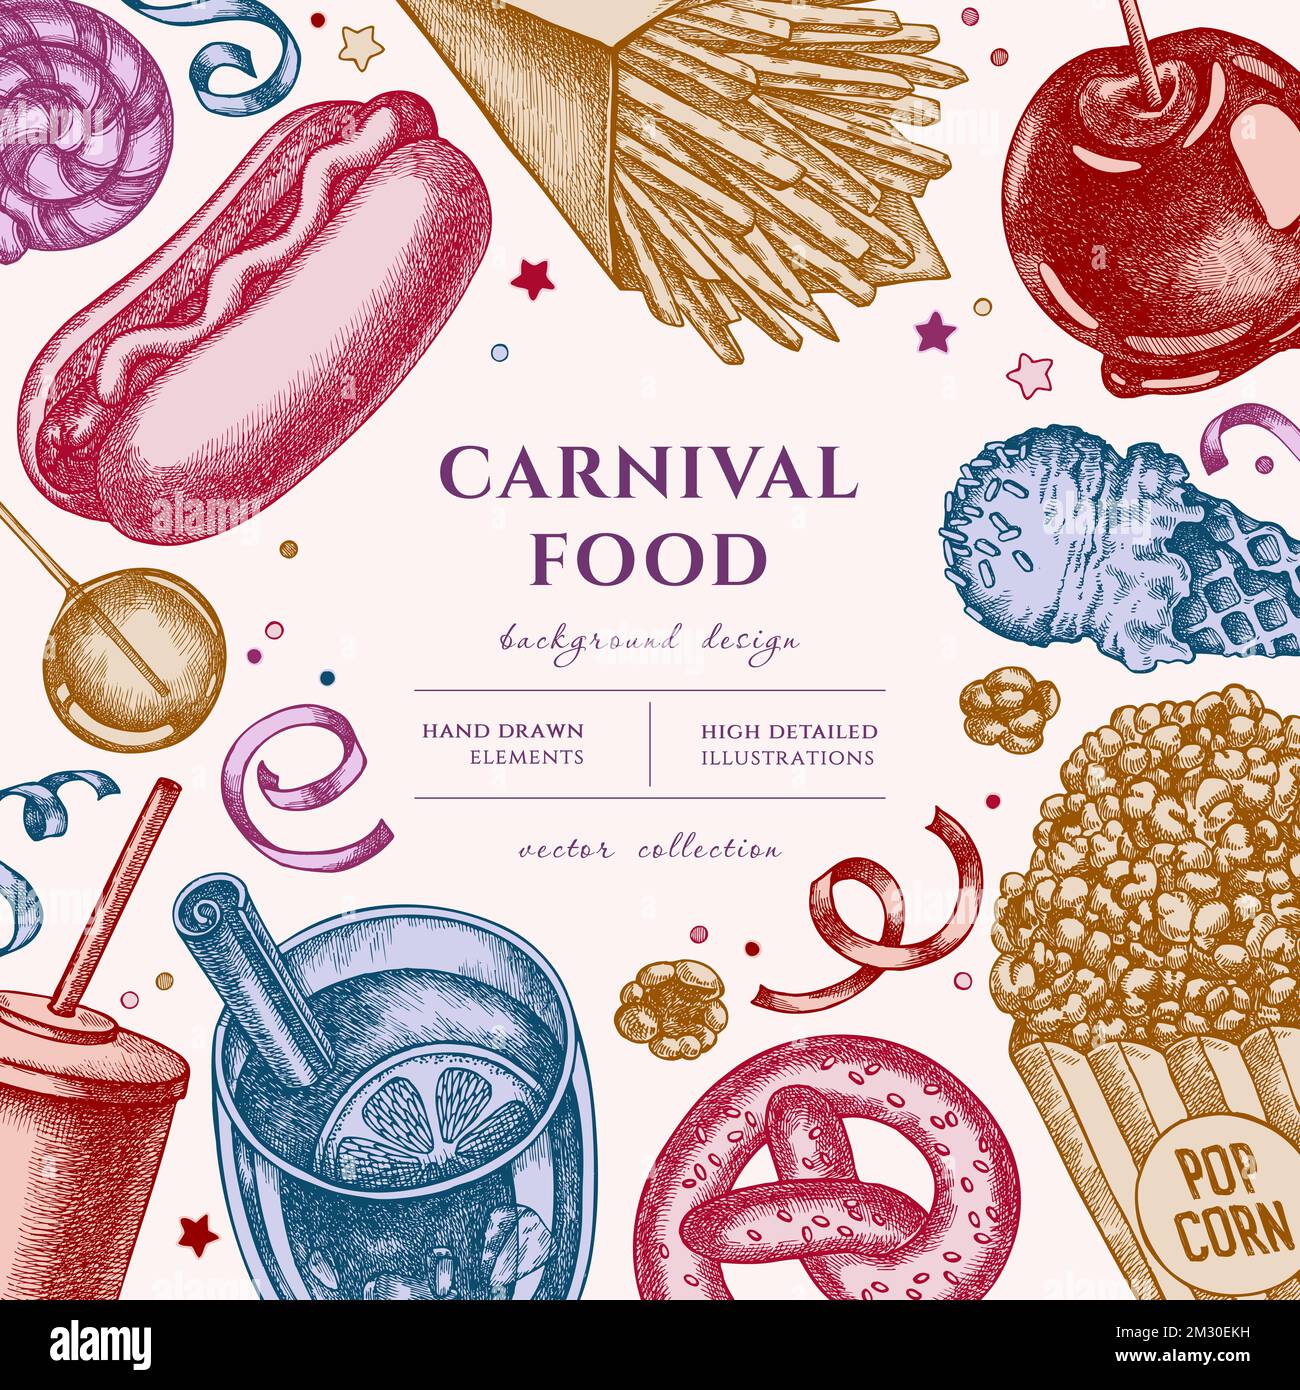 Dessin d'illustration de Carnival Food dessiné à la main. Arrière-plan avec frites vintage, bretzel, pop-corn, limonade, hot dog, vin chaud, pomme caramel Illustration de Vecteur